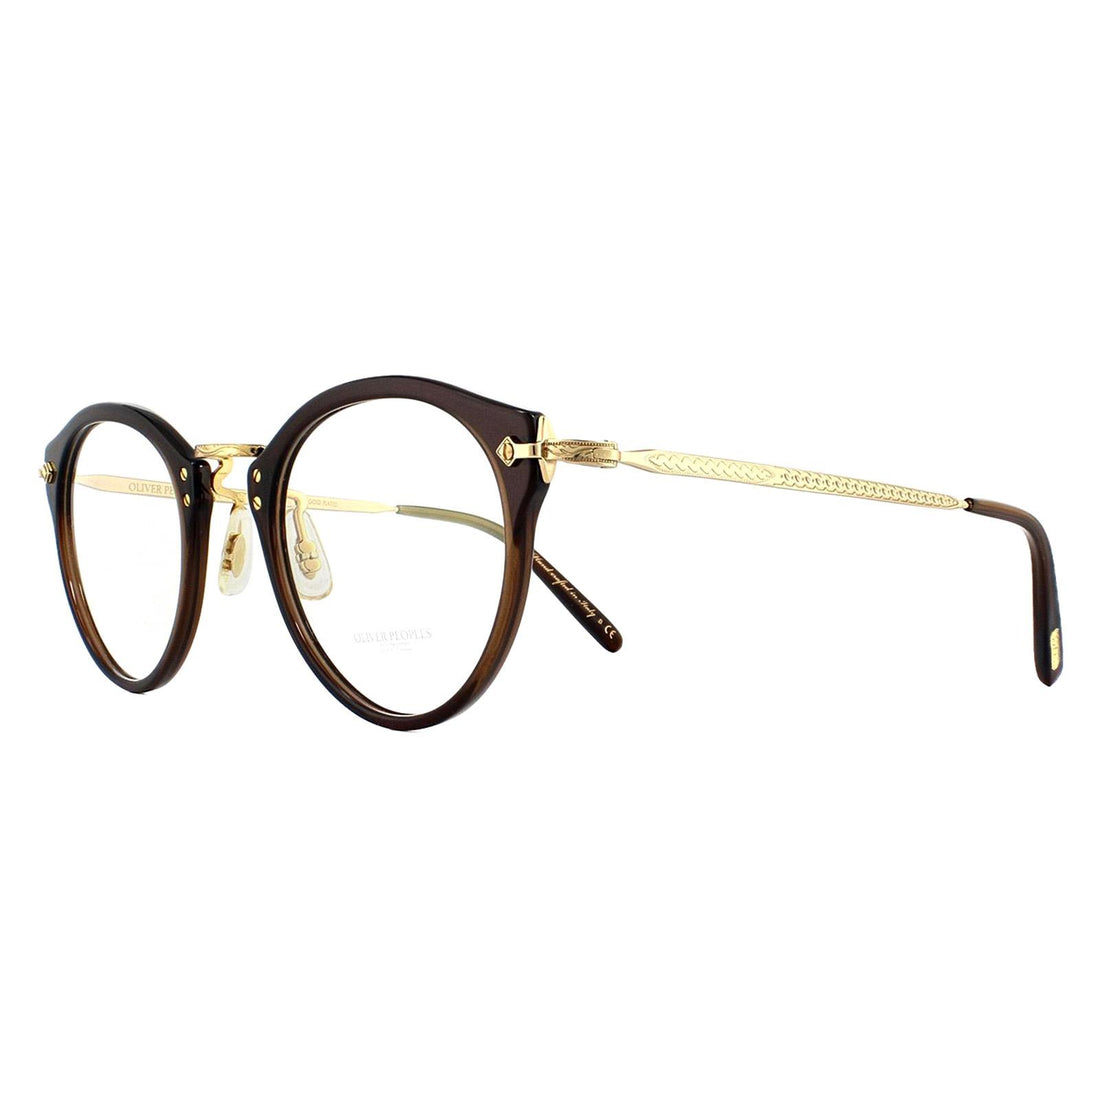 Oliver Peoples Glasses Frames OP-505 OV5184 1625 Washed Dark Brown and 18k Gold Plated 47mm